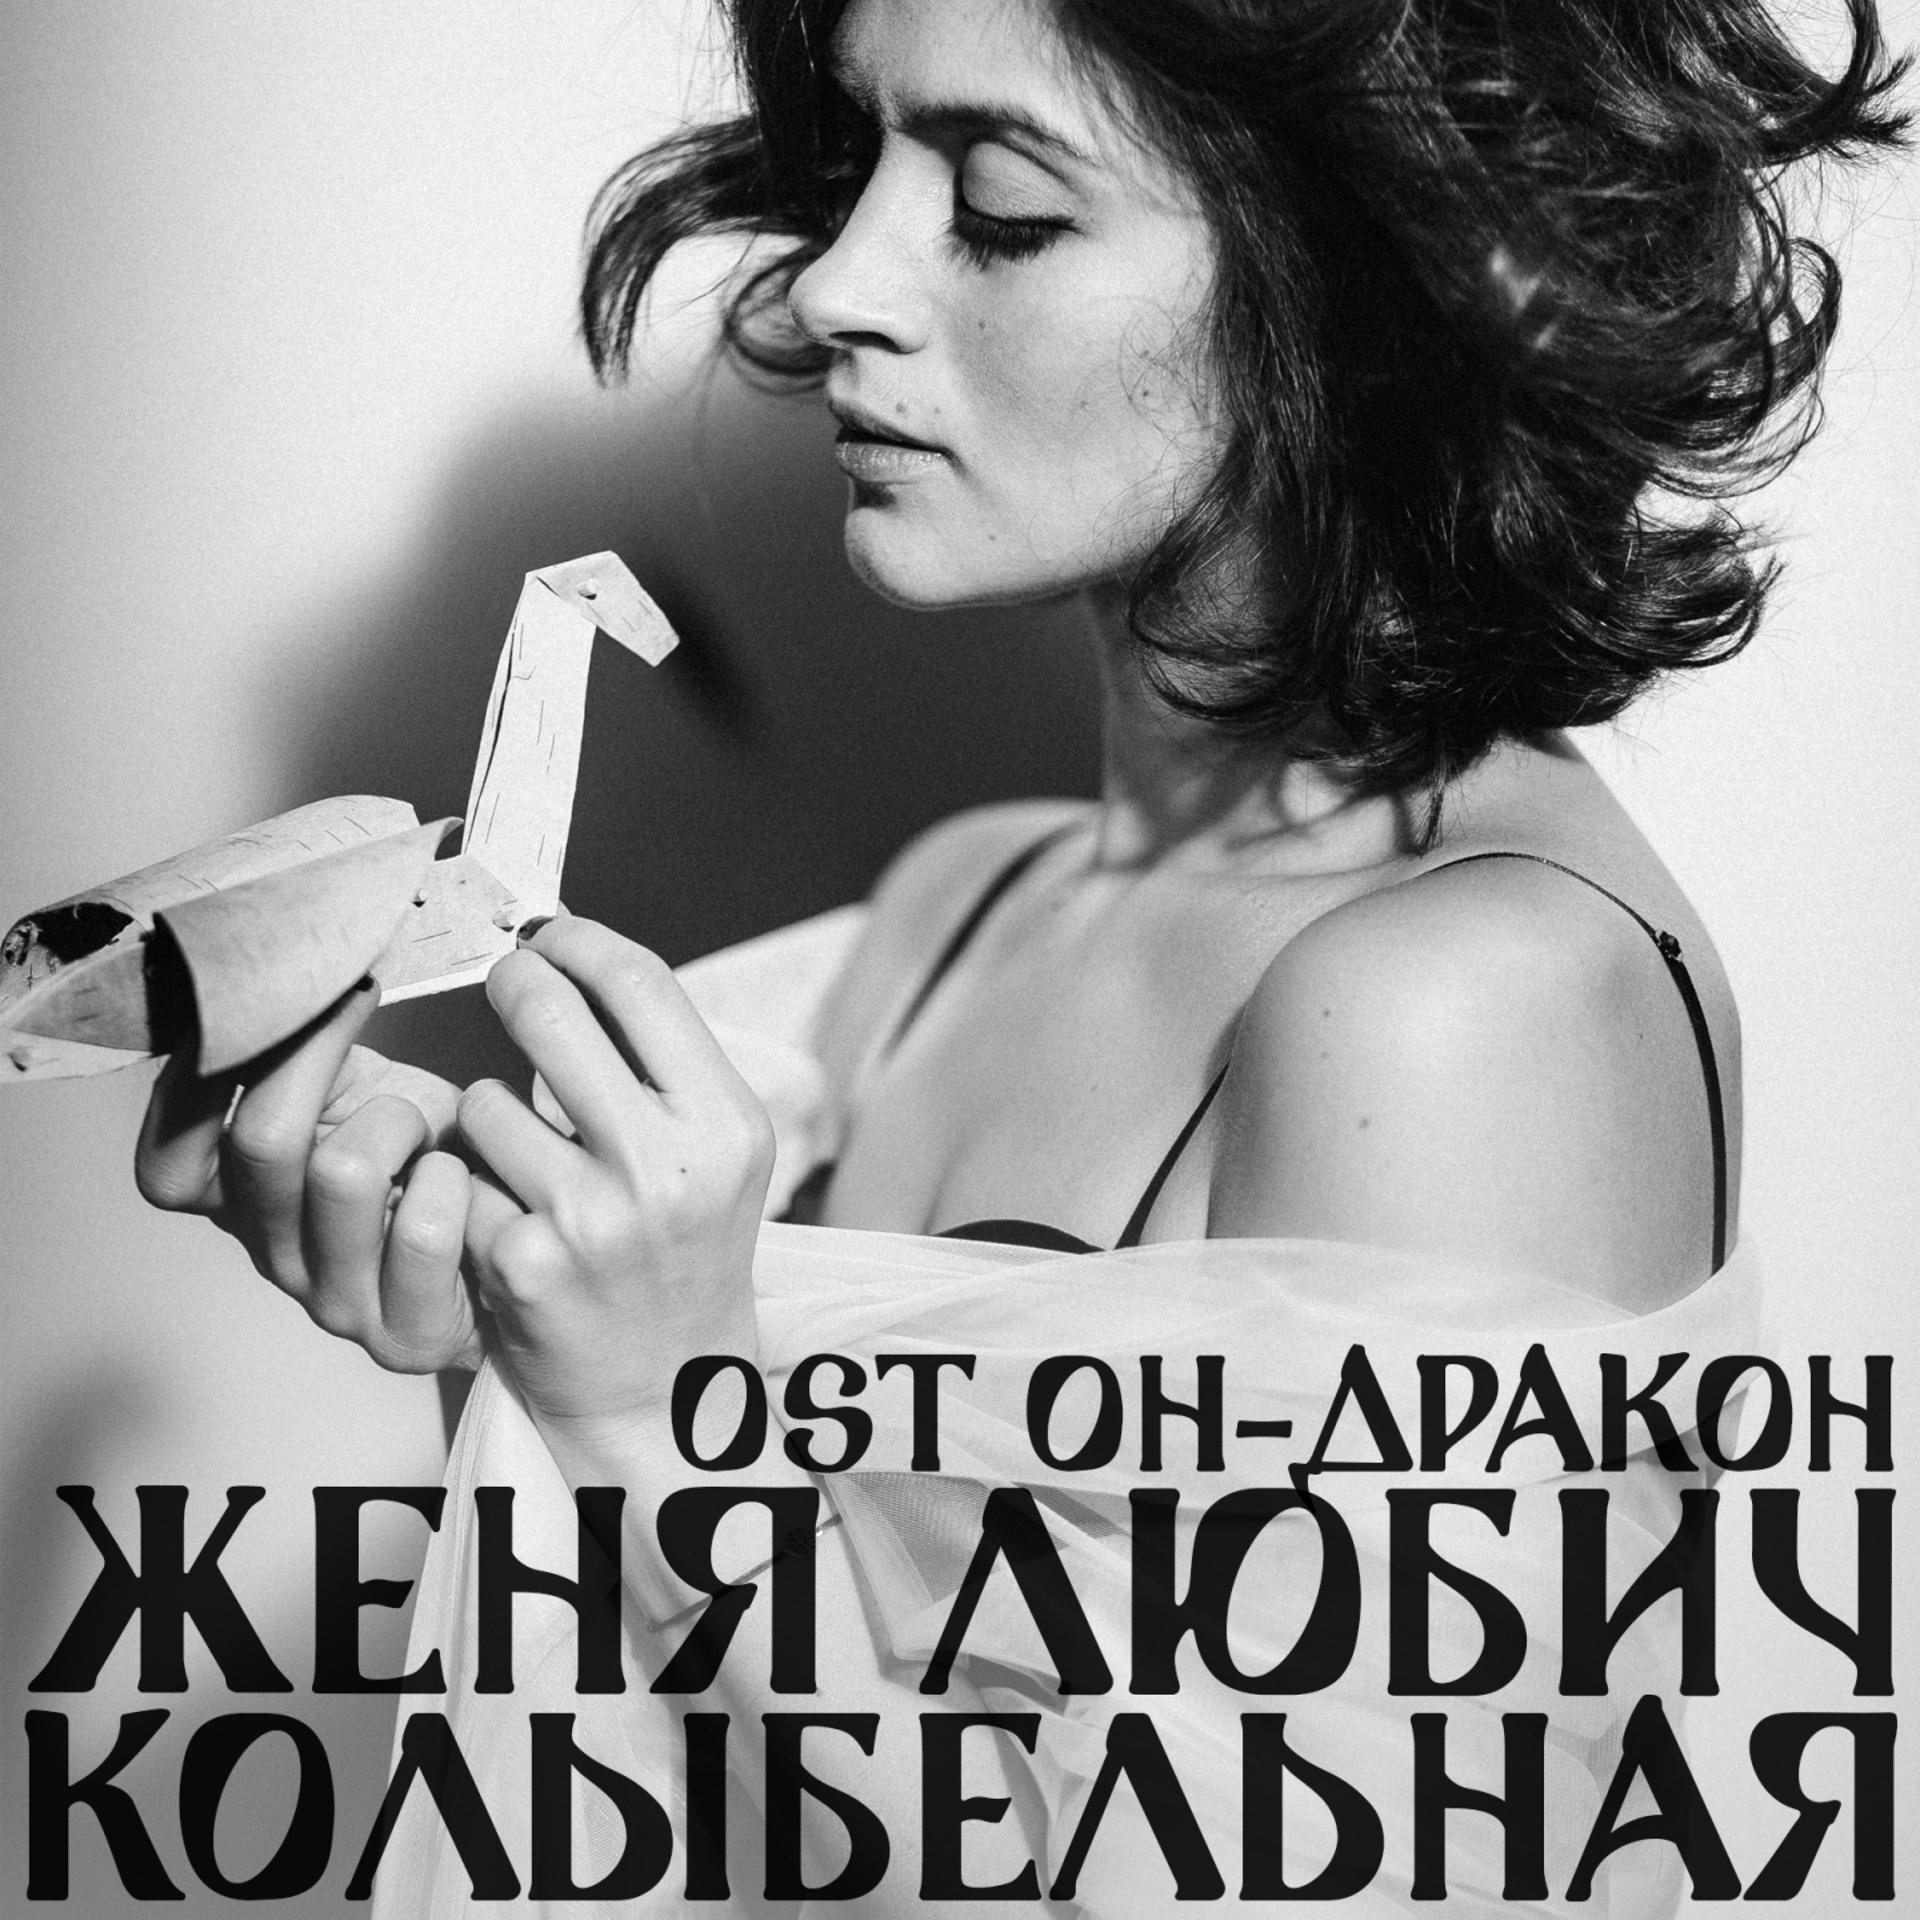 Постер к треку Женя Любич - Колыбельная тишины (Из к/ф "Он - дракон")